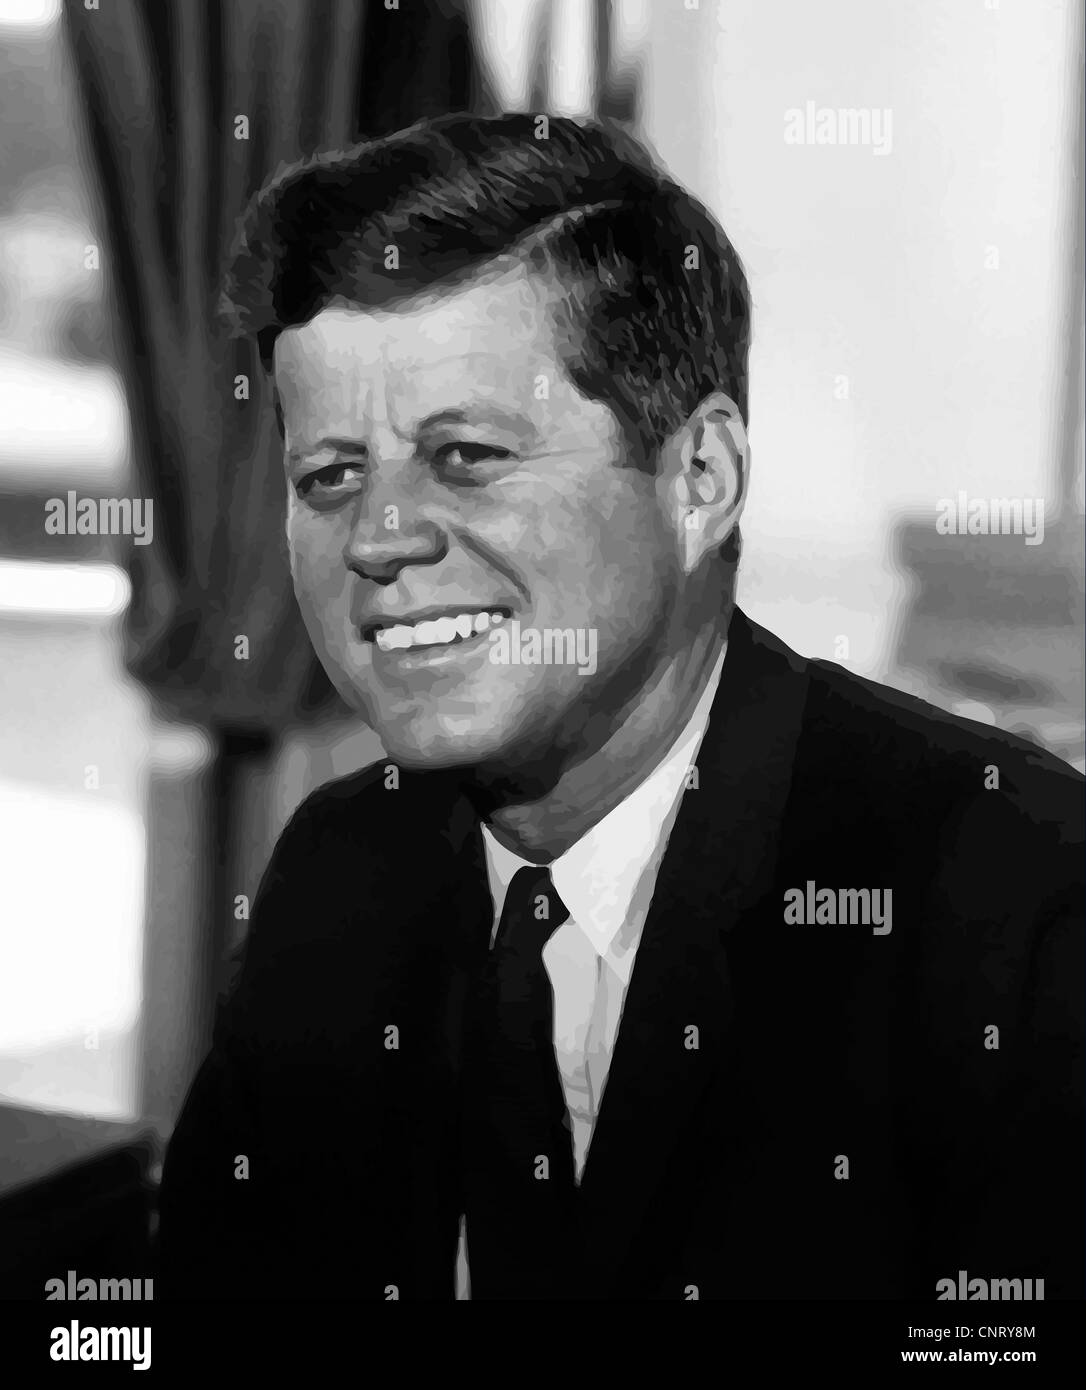 Vecteur restaurés numériquement portrait de John F. Kennedy. Banque D'Images